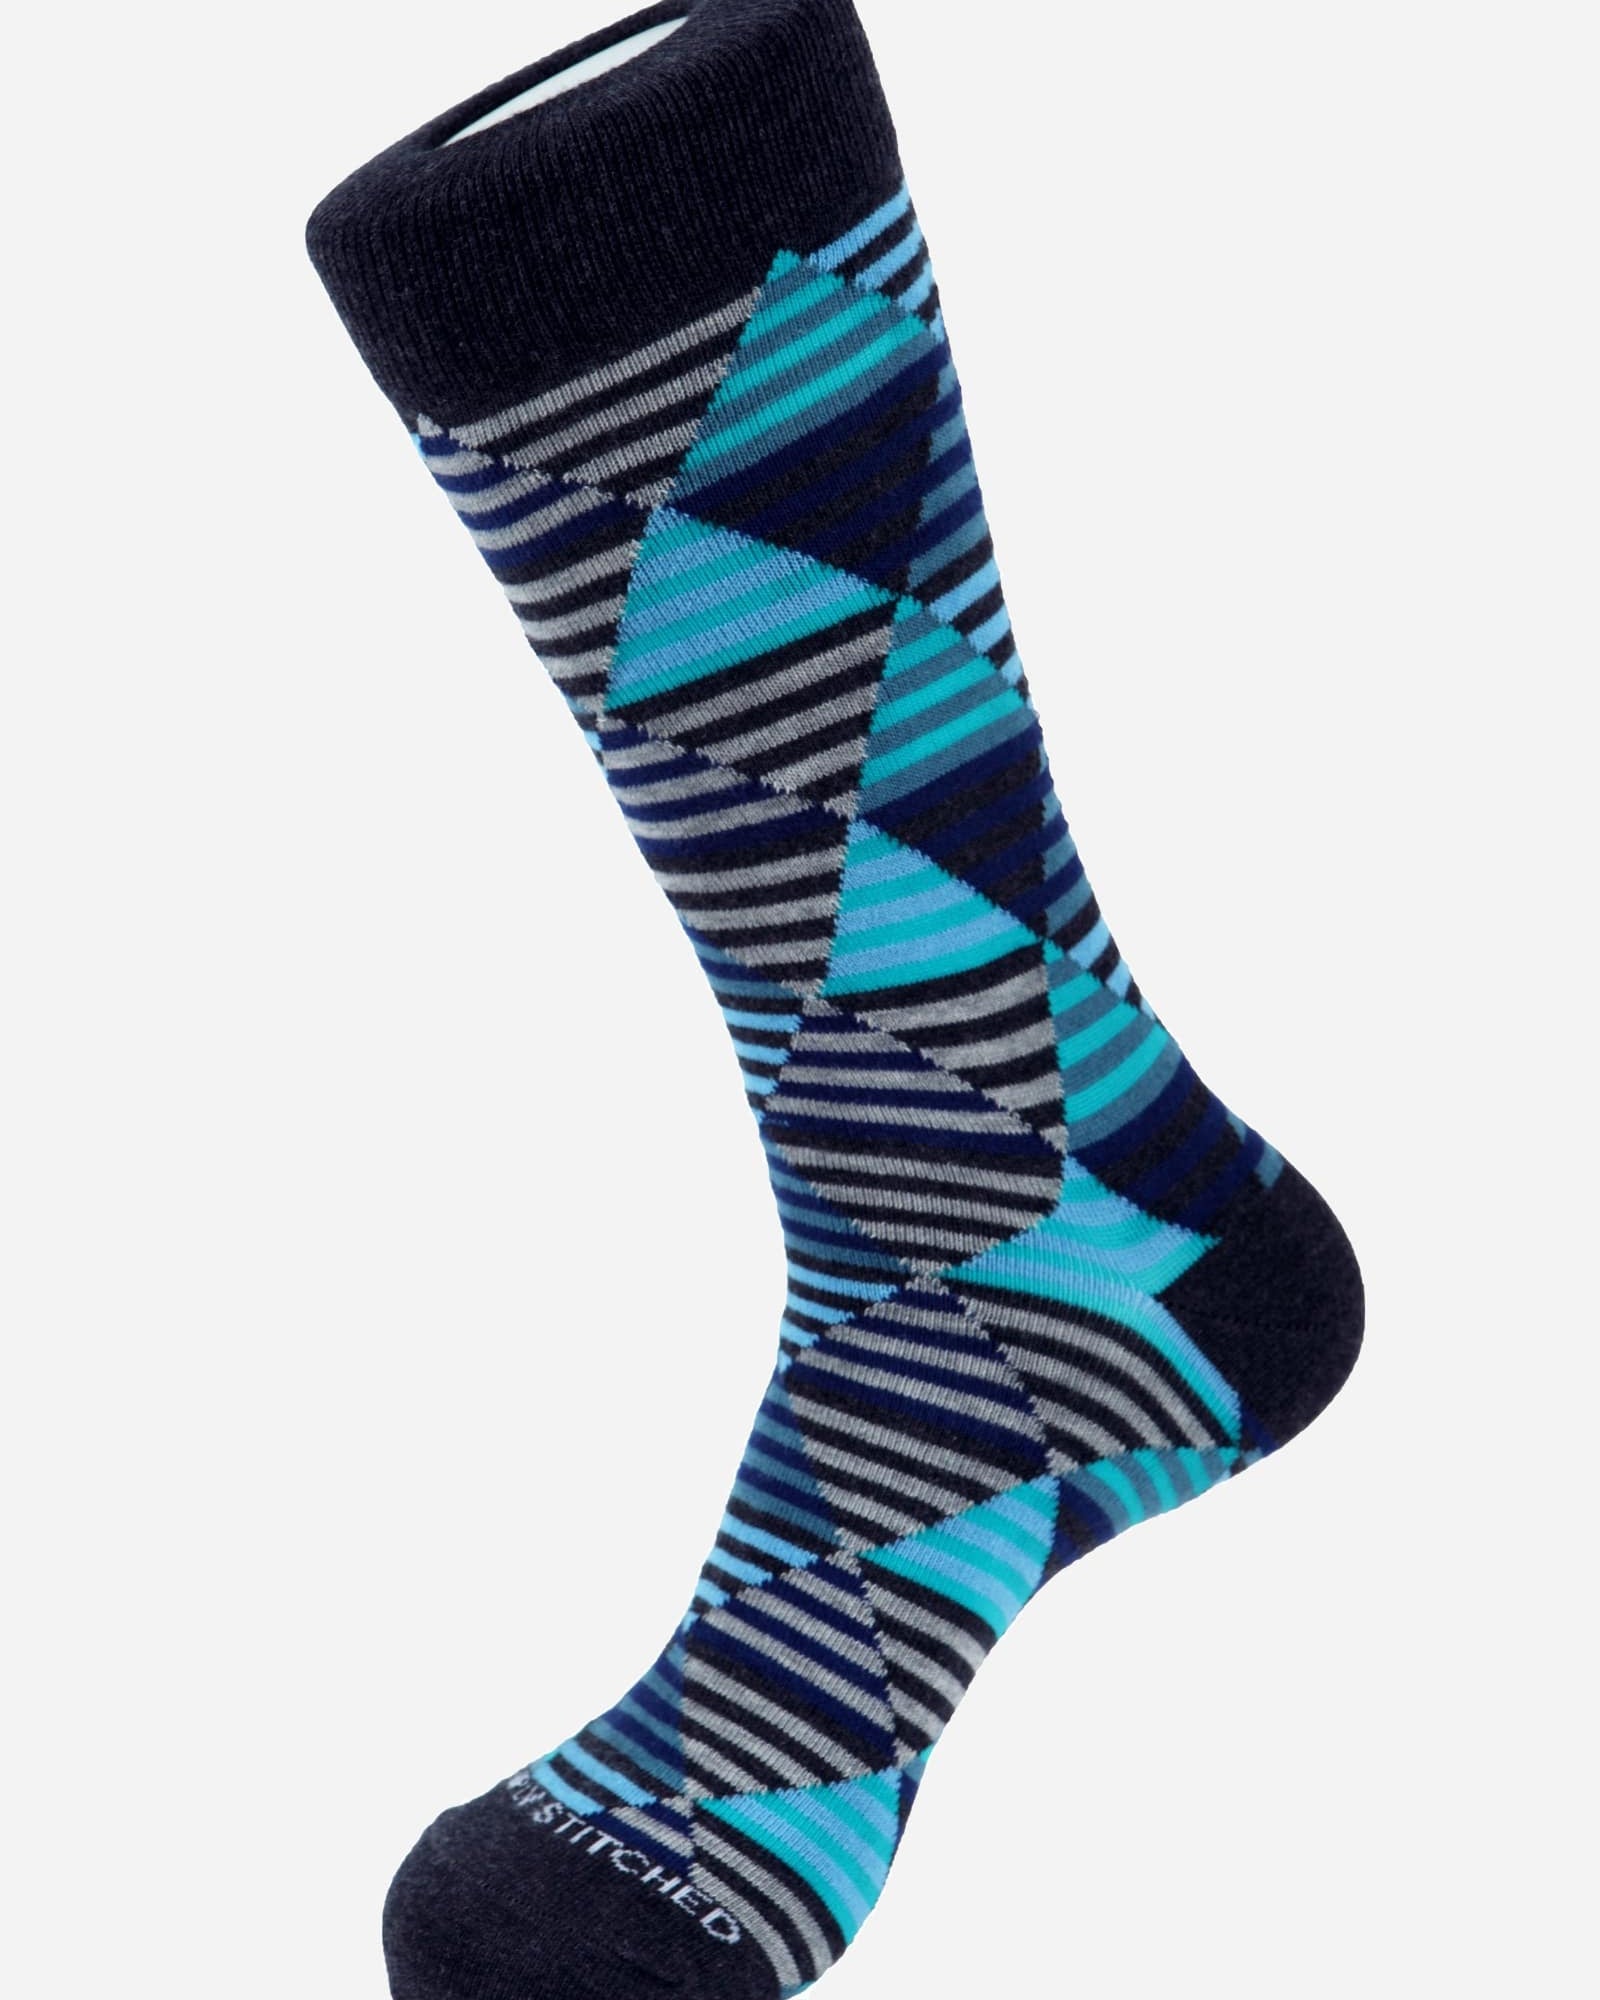 Diamond Stripe Blue Socks - Men's Socks at Menzclub